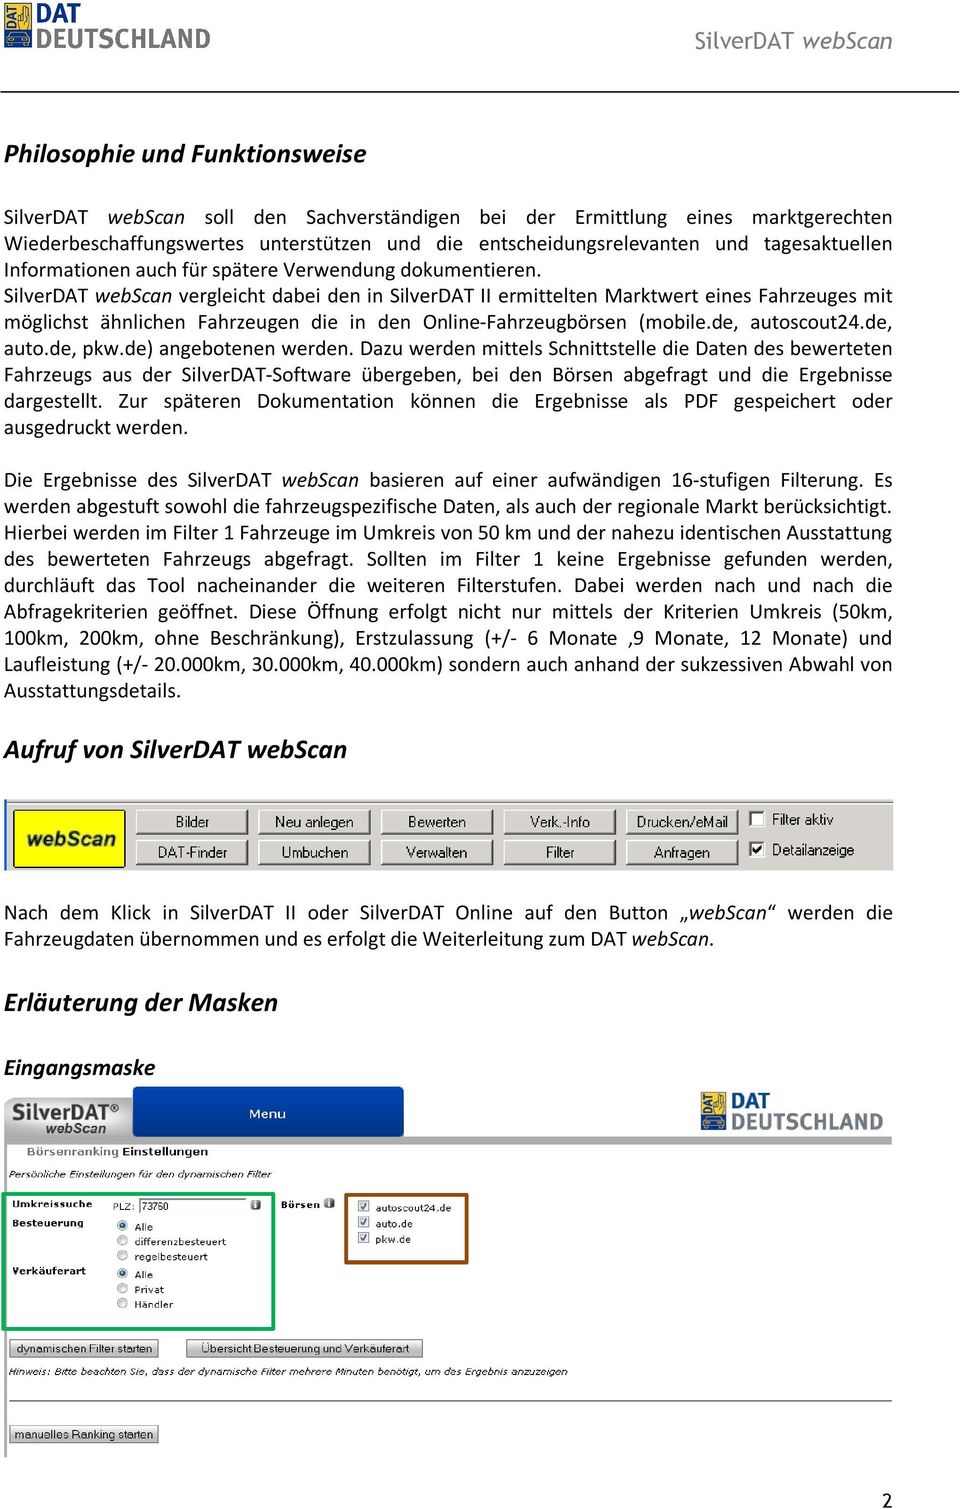 SilverDAT webscan vergleicht dabei den in SilverDAT II ermittelten Marktwert eines Fahrzeuges mit möglichst ähnlichen Fahrzeugen die in den Online-Fahrzeugbörsen (mobile.de, autoscout24.de, auto.de, pkw.